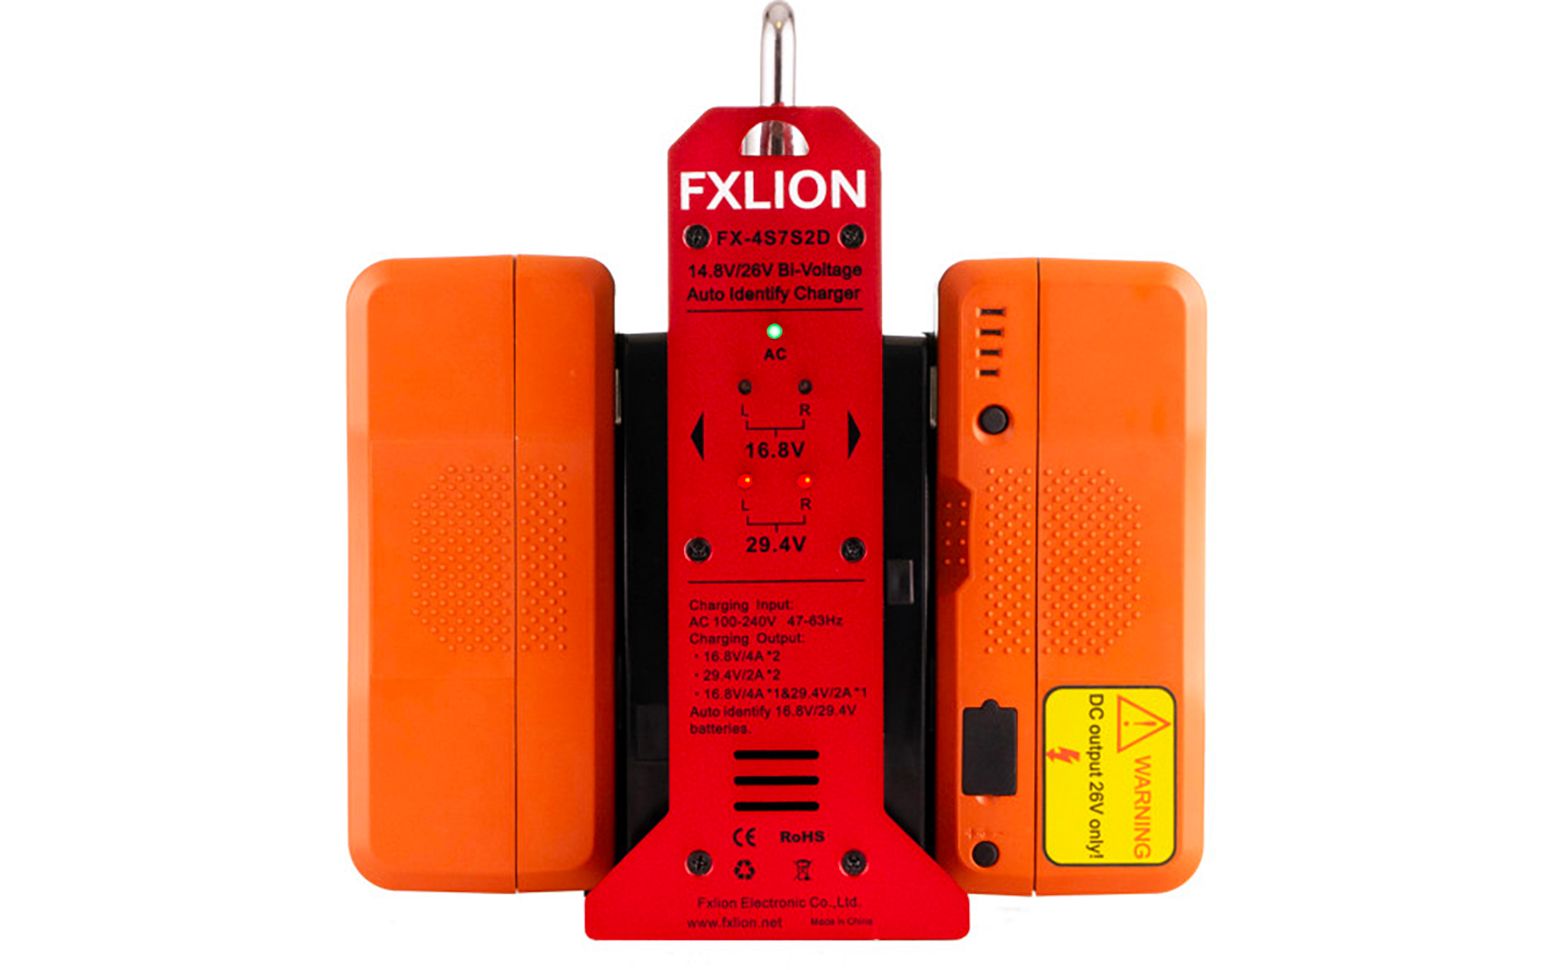 FXLION - 4.8V/26V 2 channels V-lock Charger